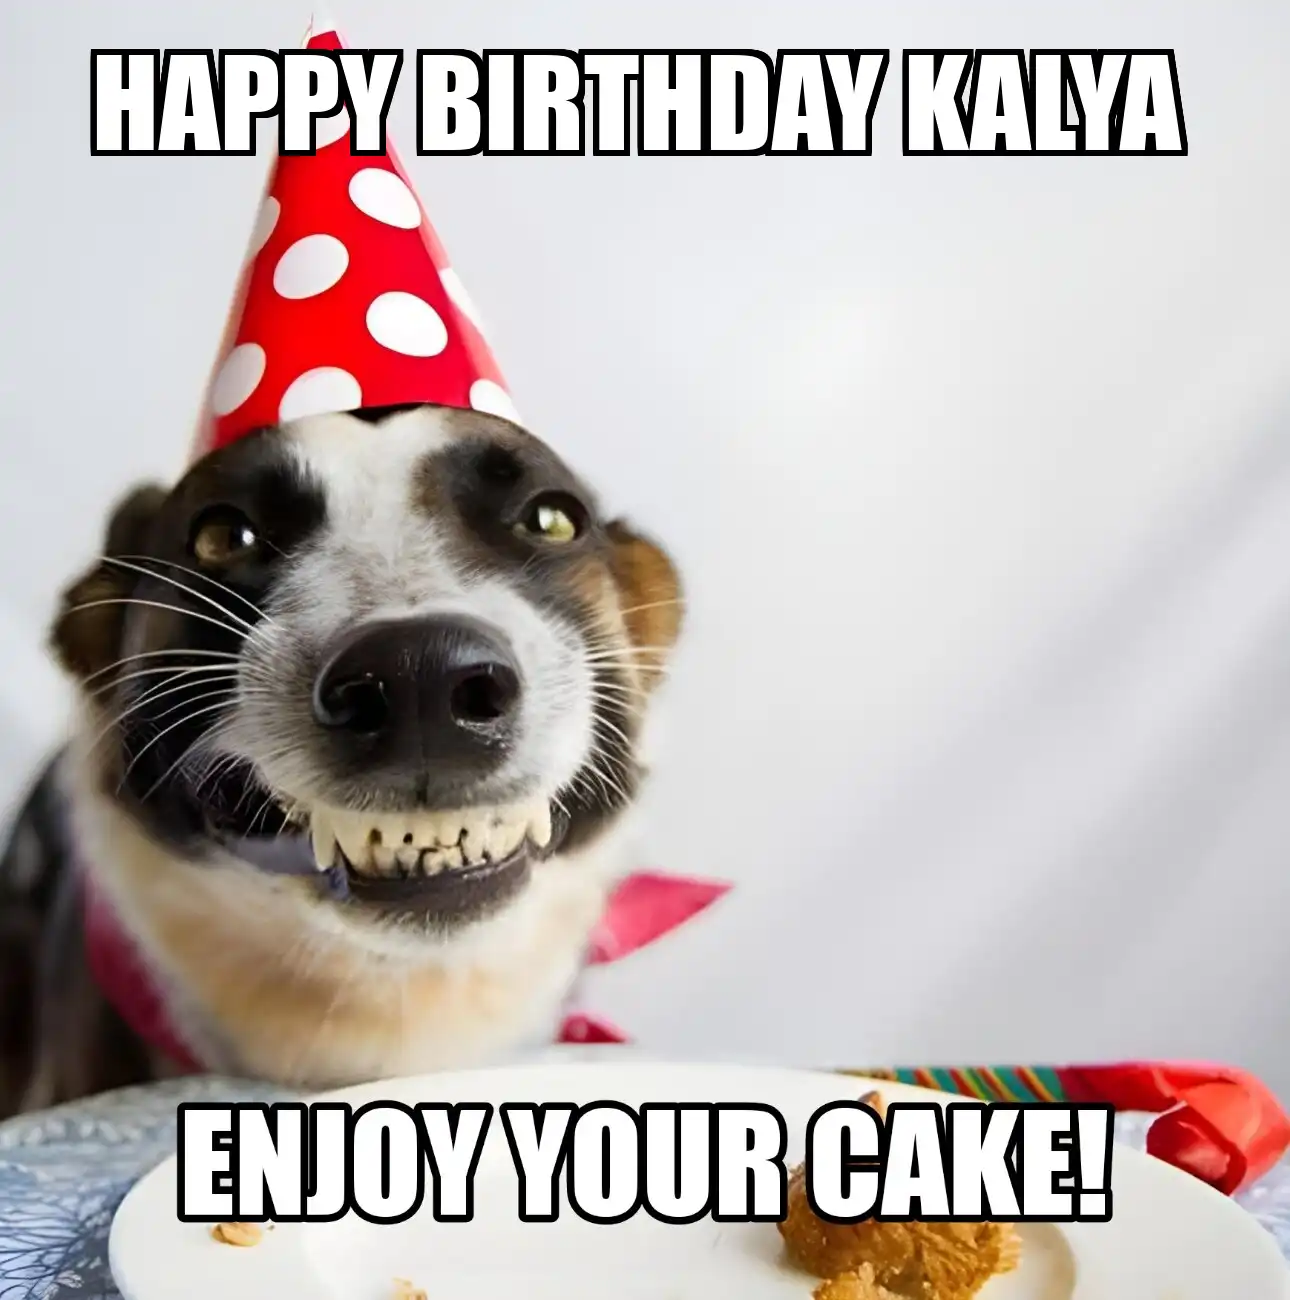 Happy Birthday Kalya Enjoy Your Cake Dog Meme